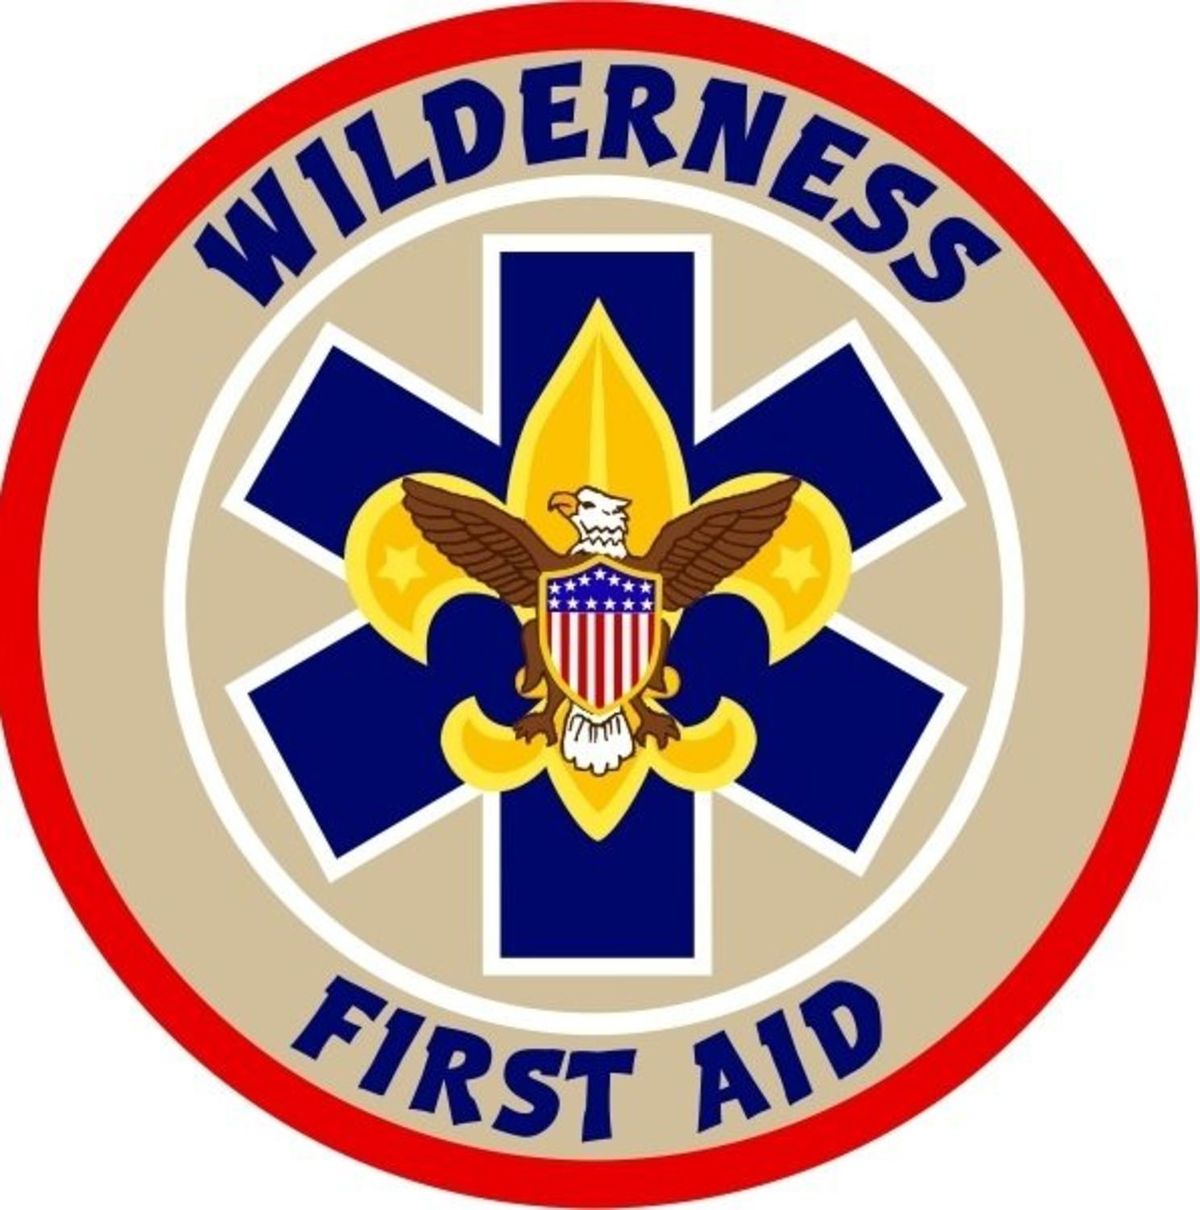 Wilderness First Aid 